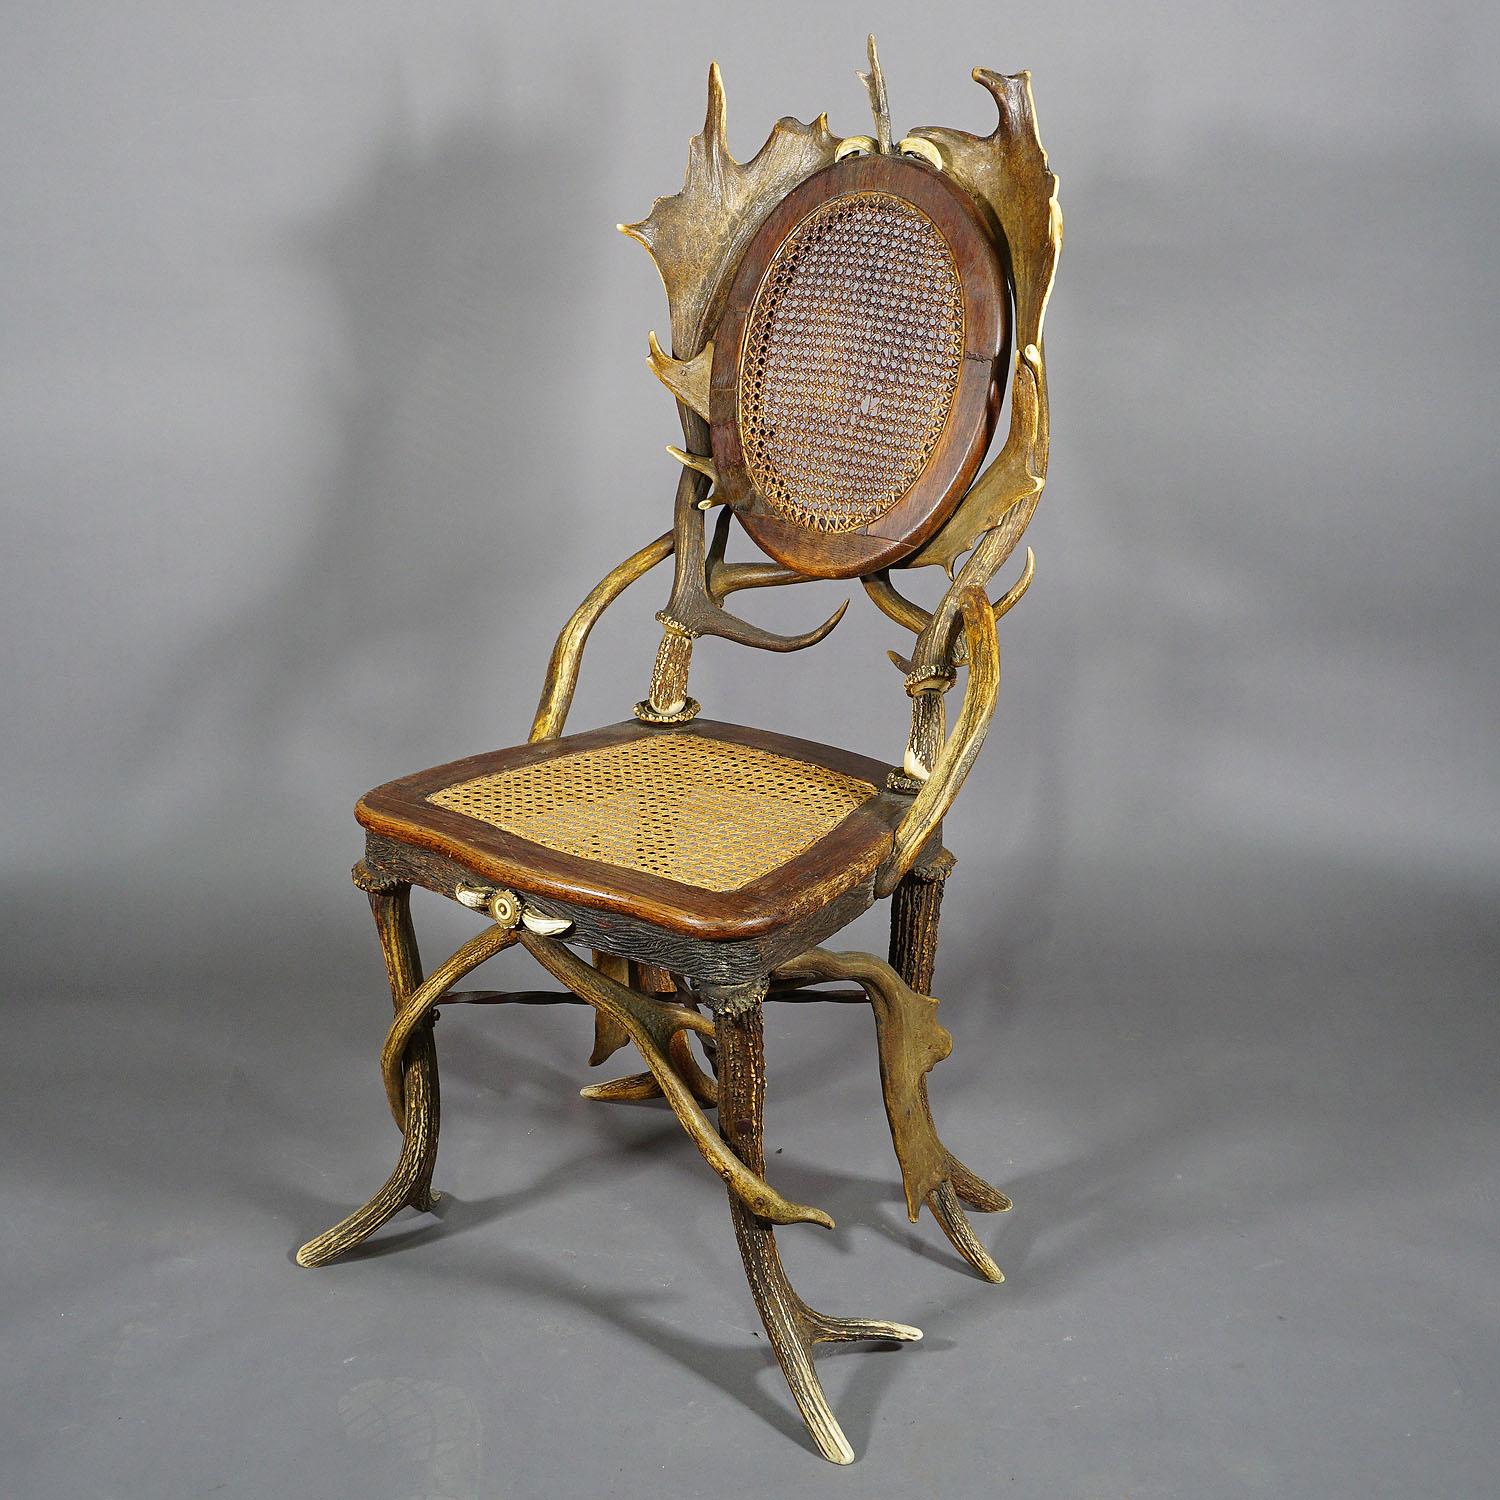 Paire de fauteuils de salon anciens rustiques en bois de cervidé, Allemagne, vers 1900

Paire de chaises anciennes en bois de cerf et de daim. Elles sont ornées d'une rose en corne tournée et de défenses de sanglier. L'assise et le dossier sont en